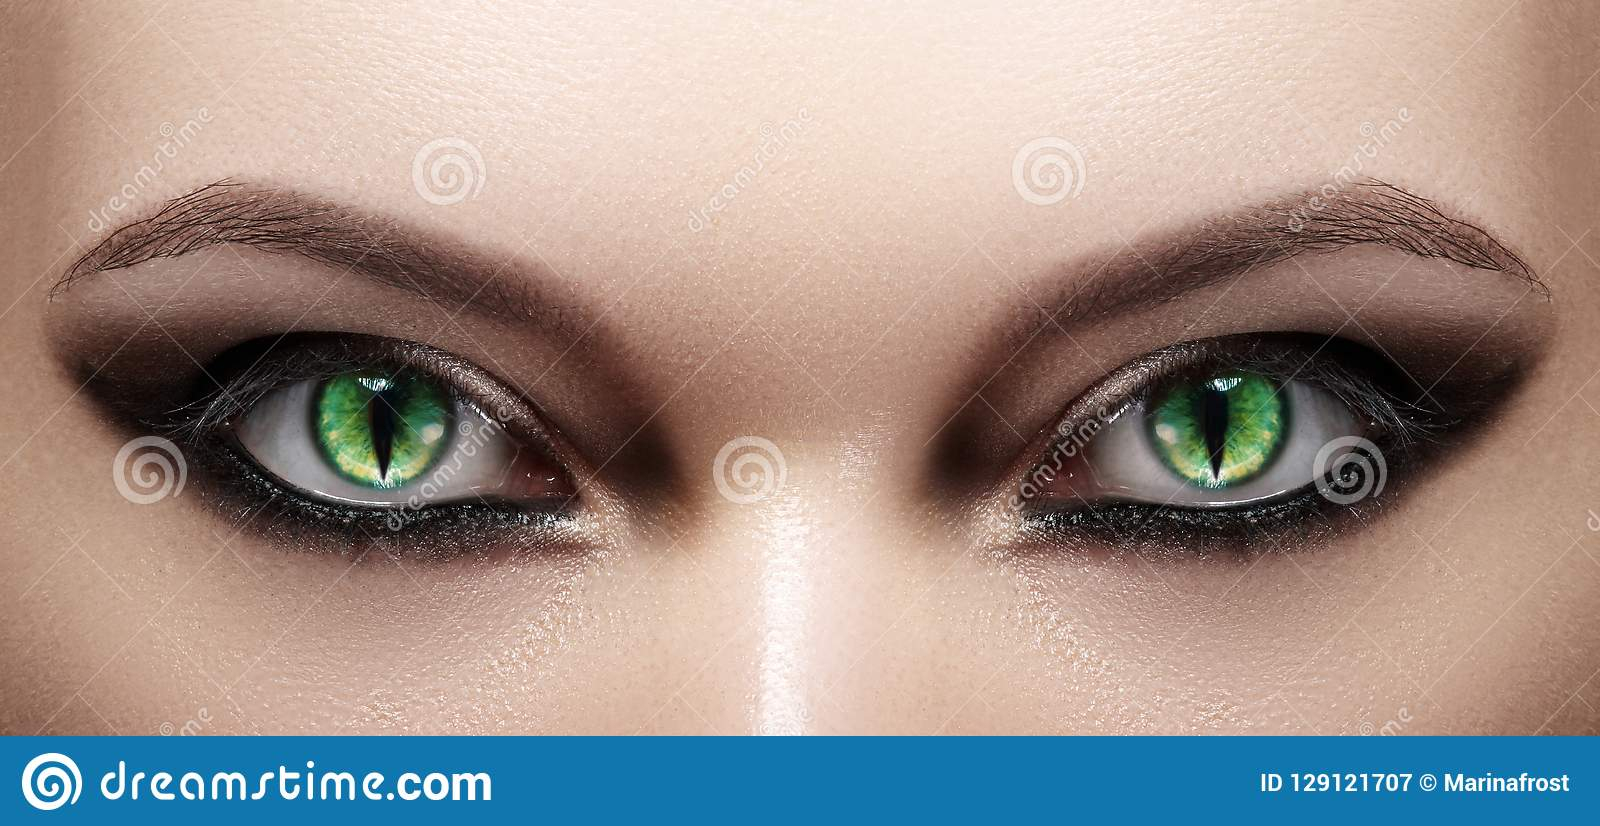 Black Cat Eye Makeup Close Up Of Woman Eyes Halloween Makeup Cat Eye Lens Fashion